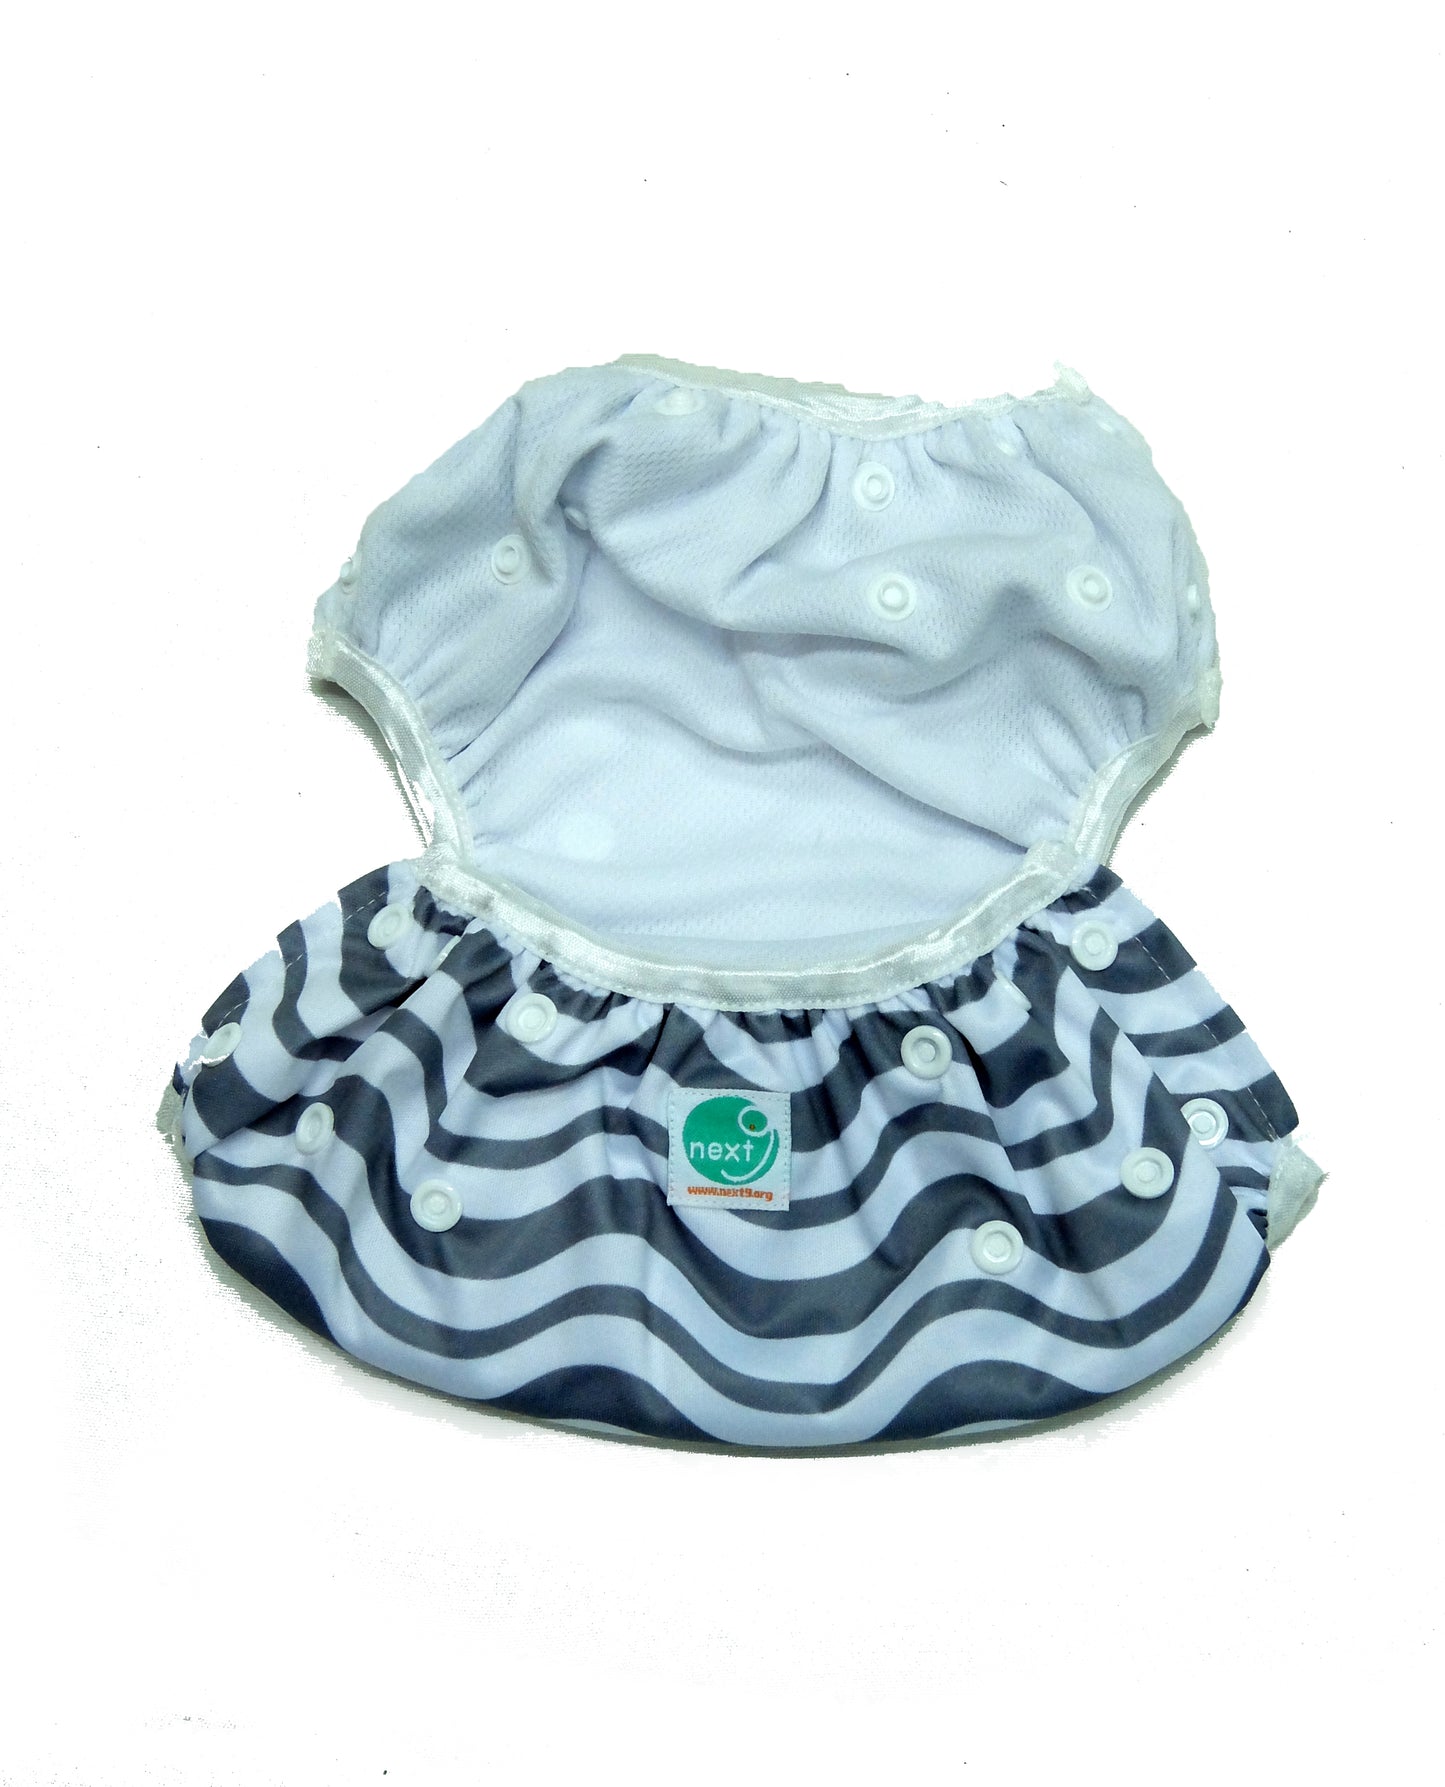 Next9 Swim Diapers Anchor Blue (assorted design)